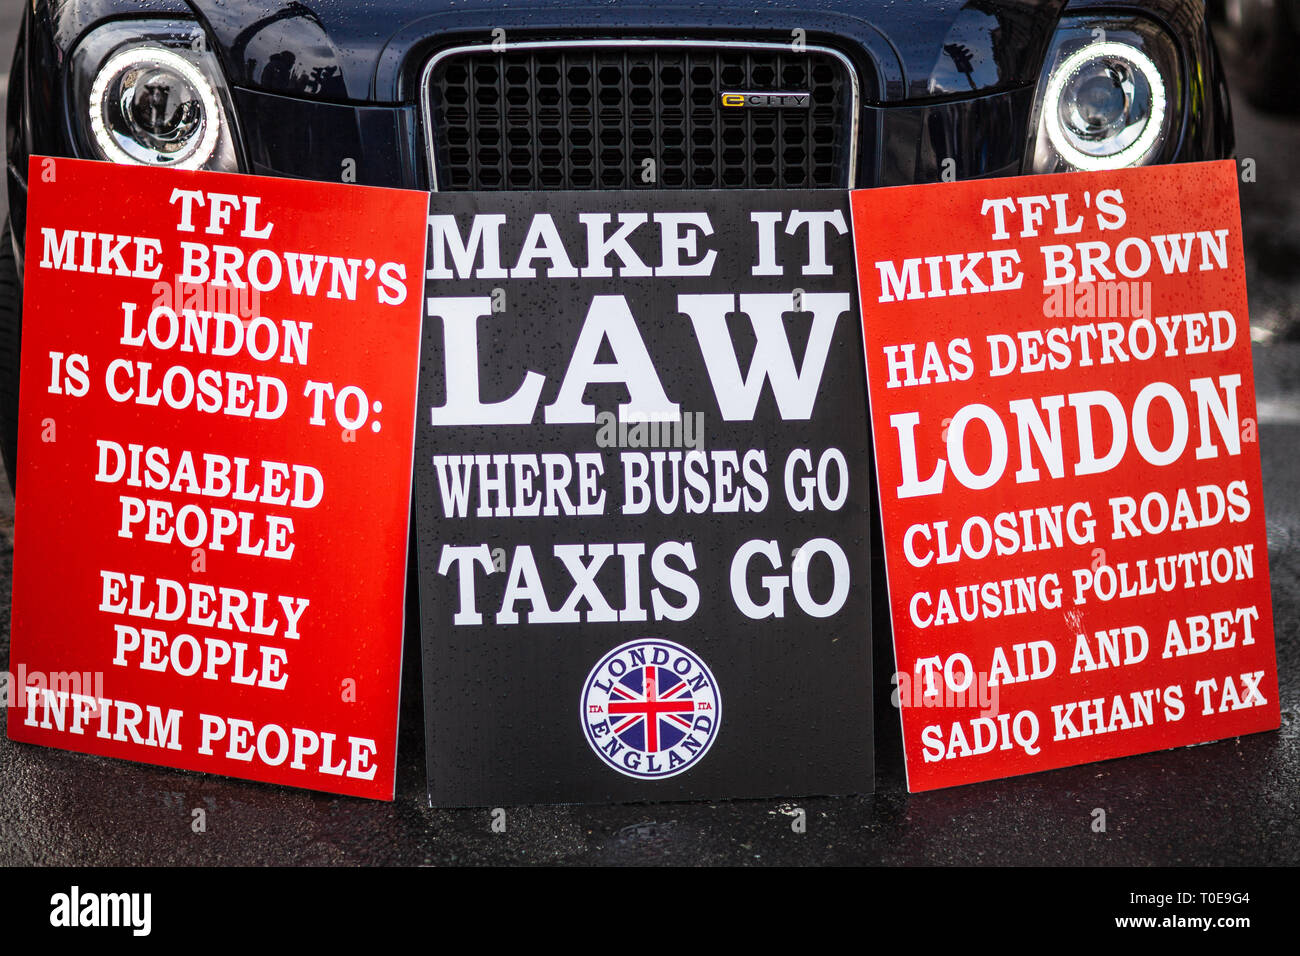 Londres Taxi disputa - Taxistas protestan contra cambios cerrando ciertas carreteras para los taxis de Londres, los cambios propuestos por el transporte de Londres TFL Foto de stock